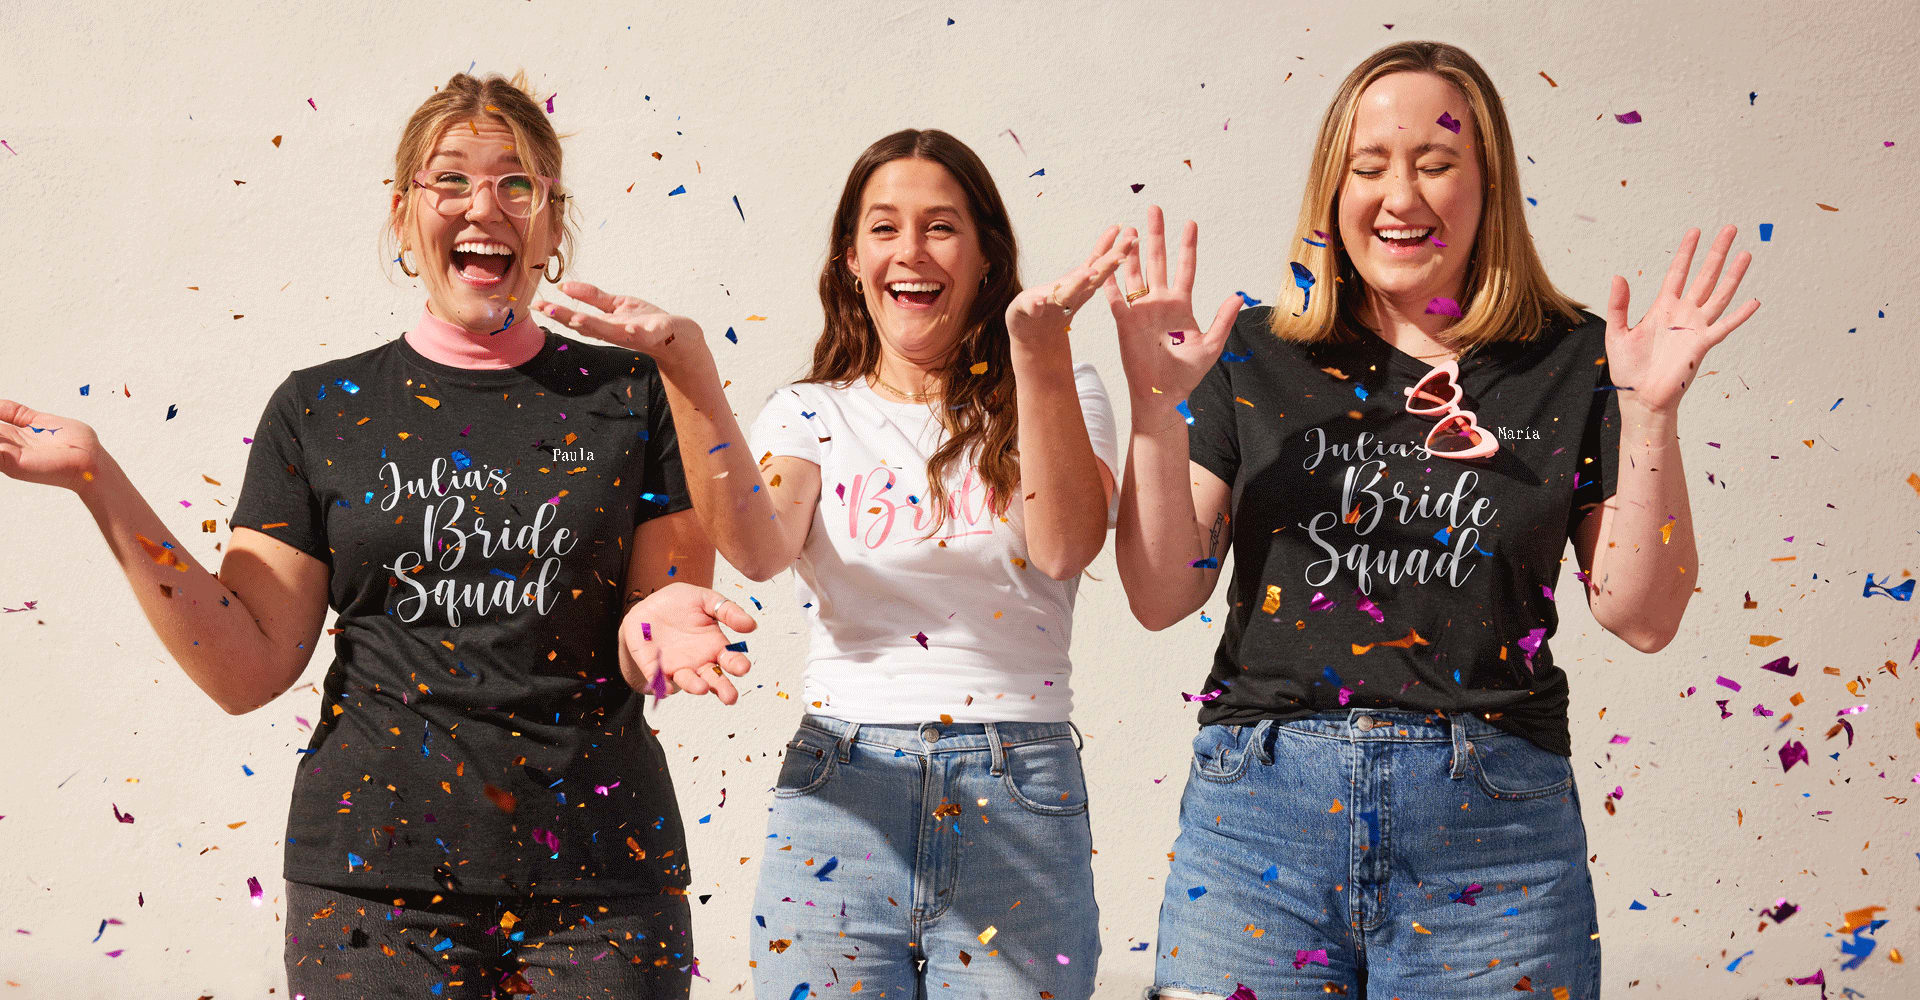 Chicas alegres con camisetas de mujer entalladas de Fruit of the Loom® a juego, divirtiéndose con confeti de colores y celebrando una fiesta de boda.